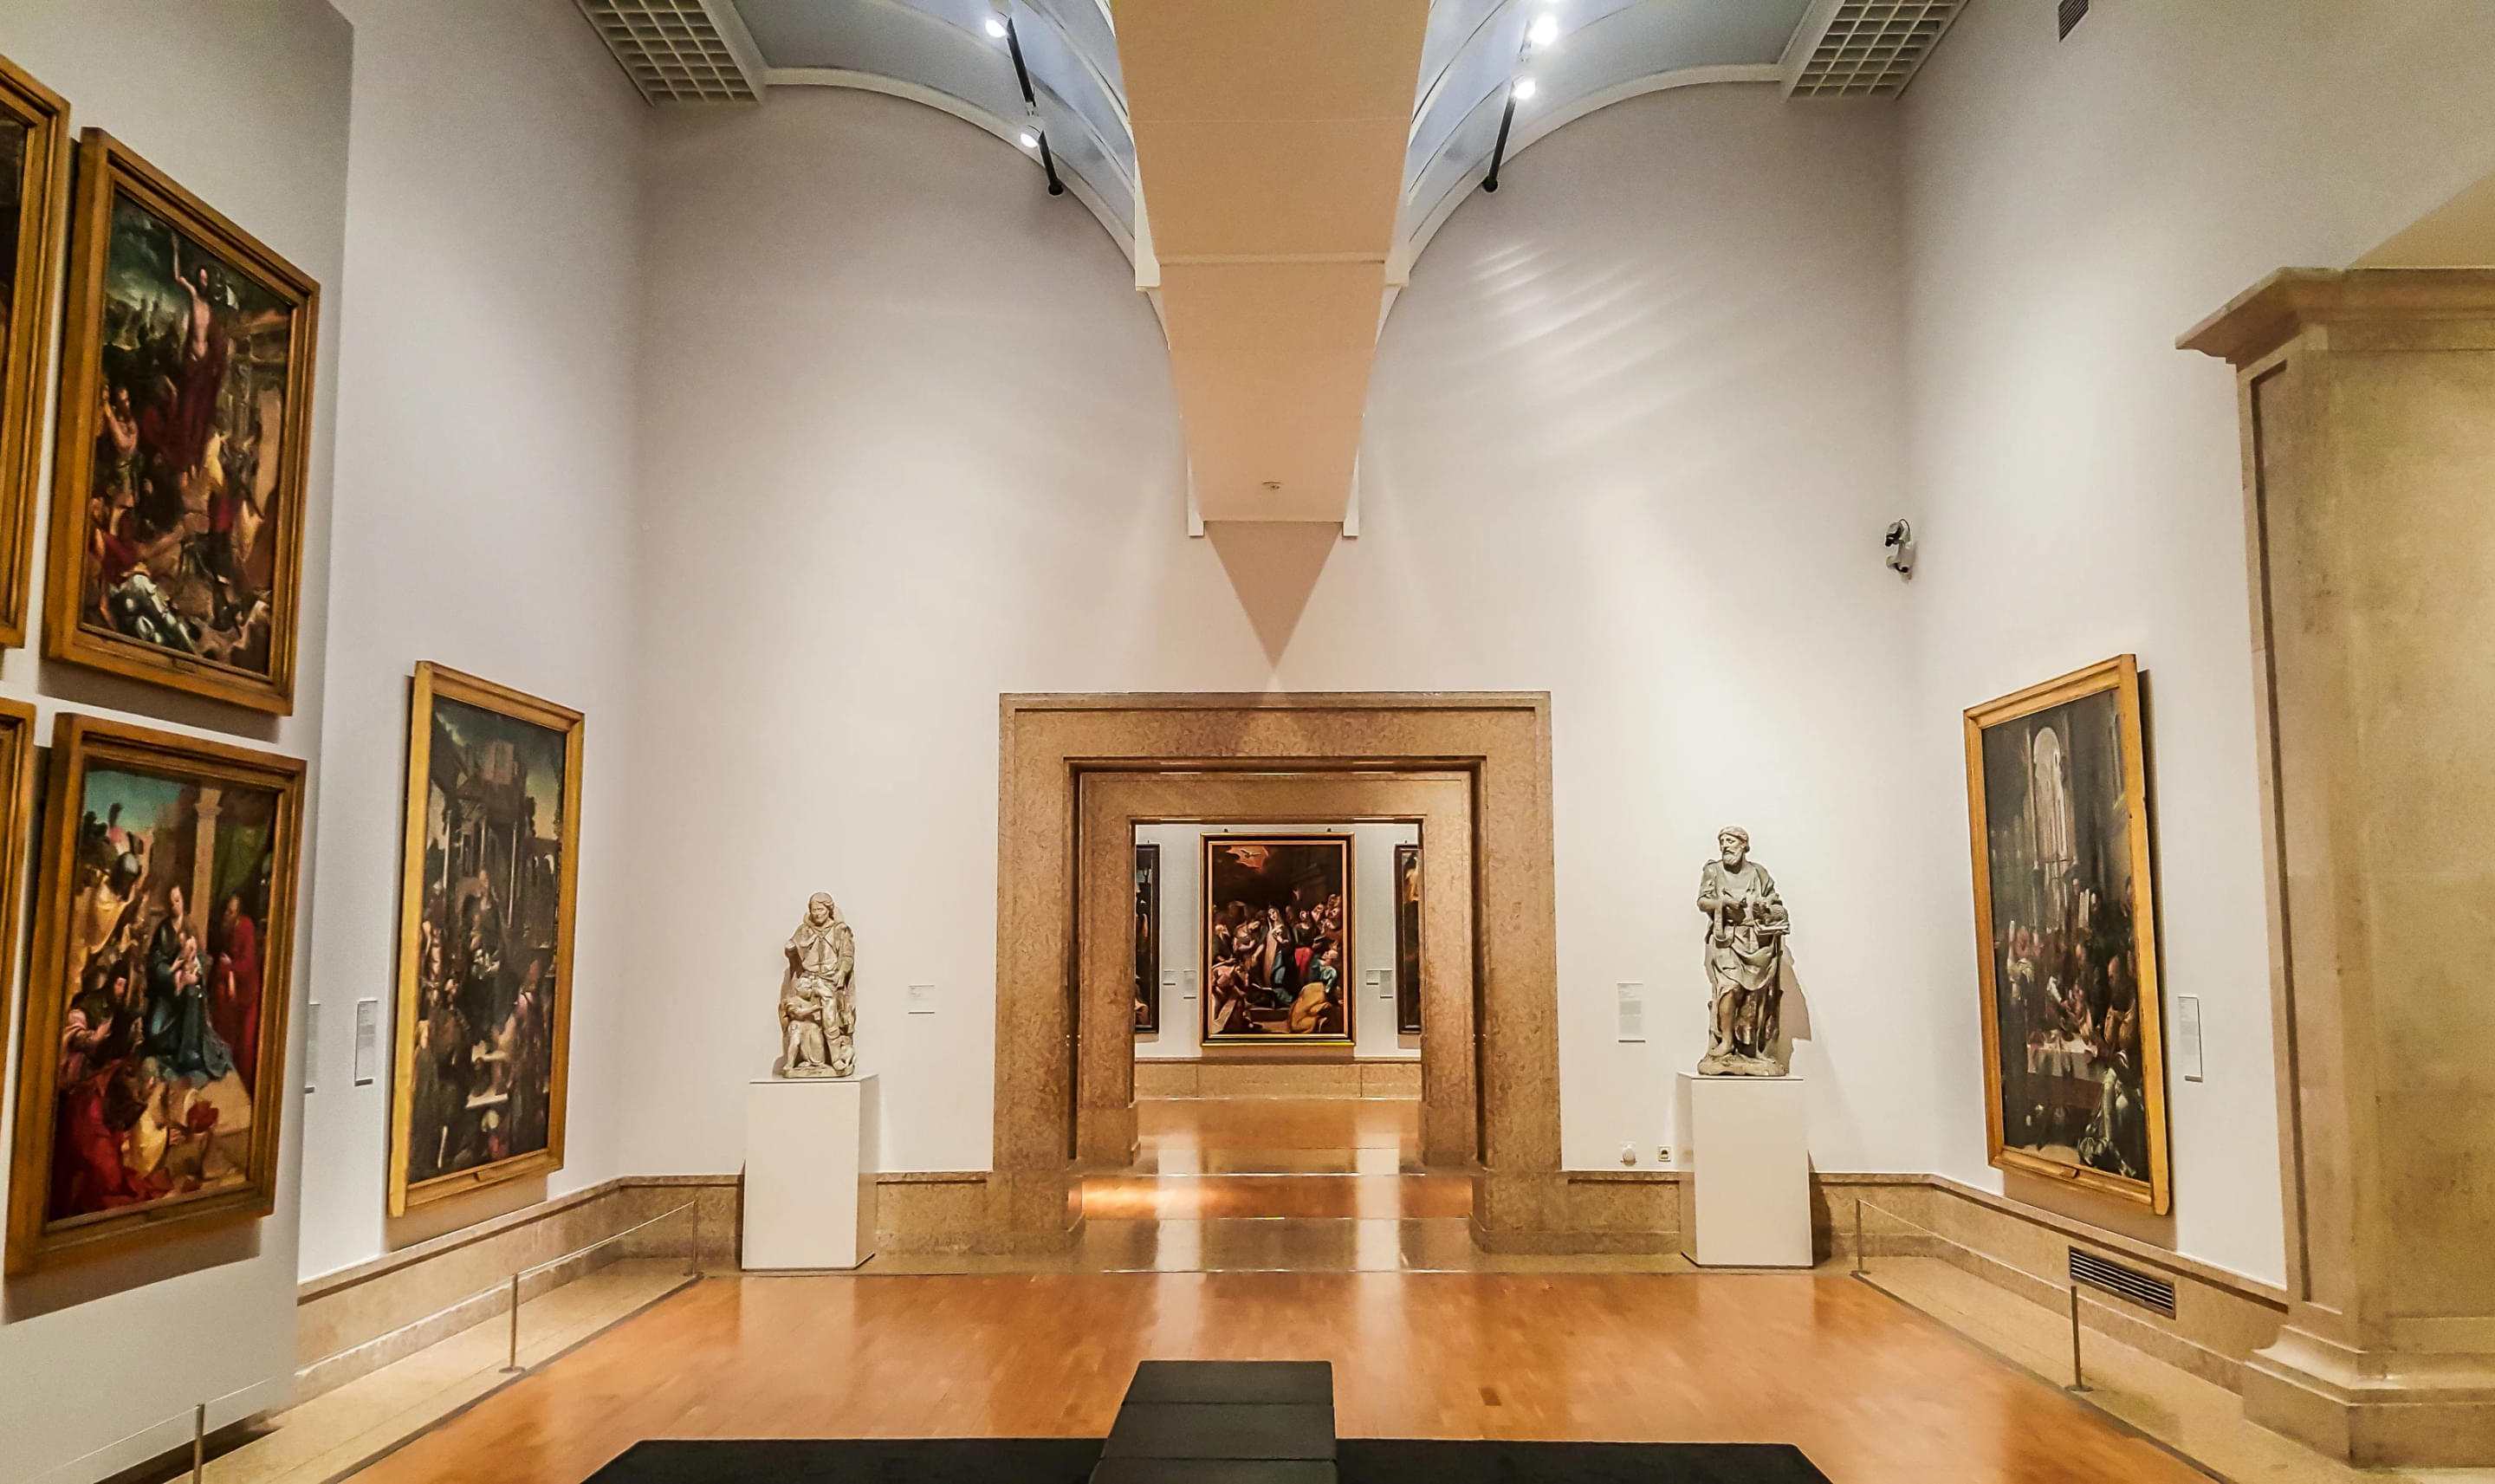 Museu Nacional de Arte Antiga Overview